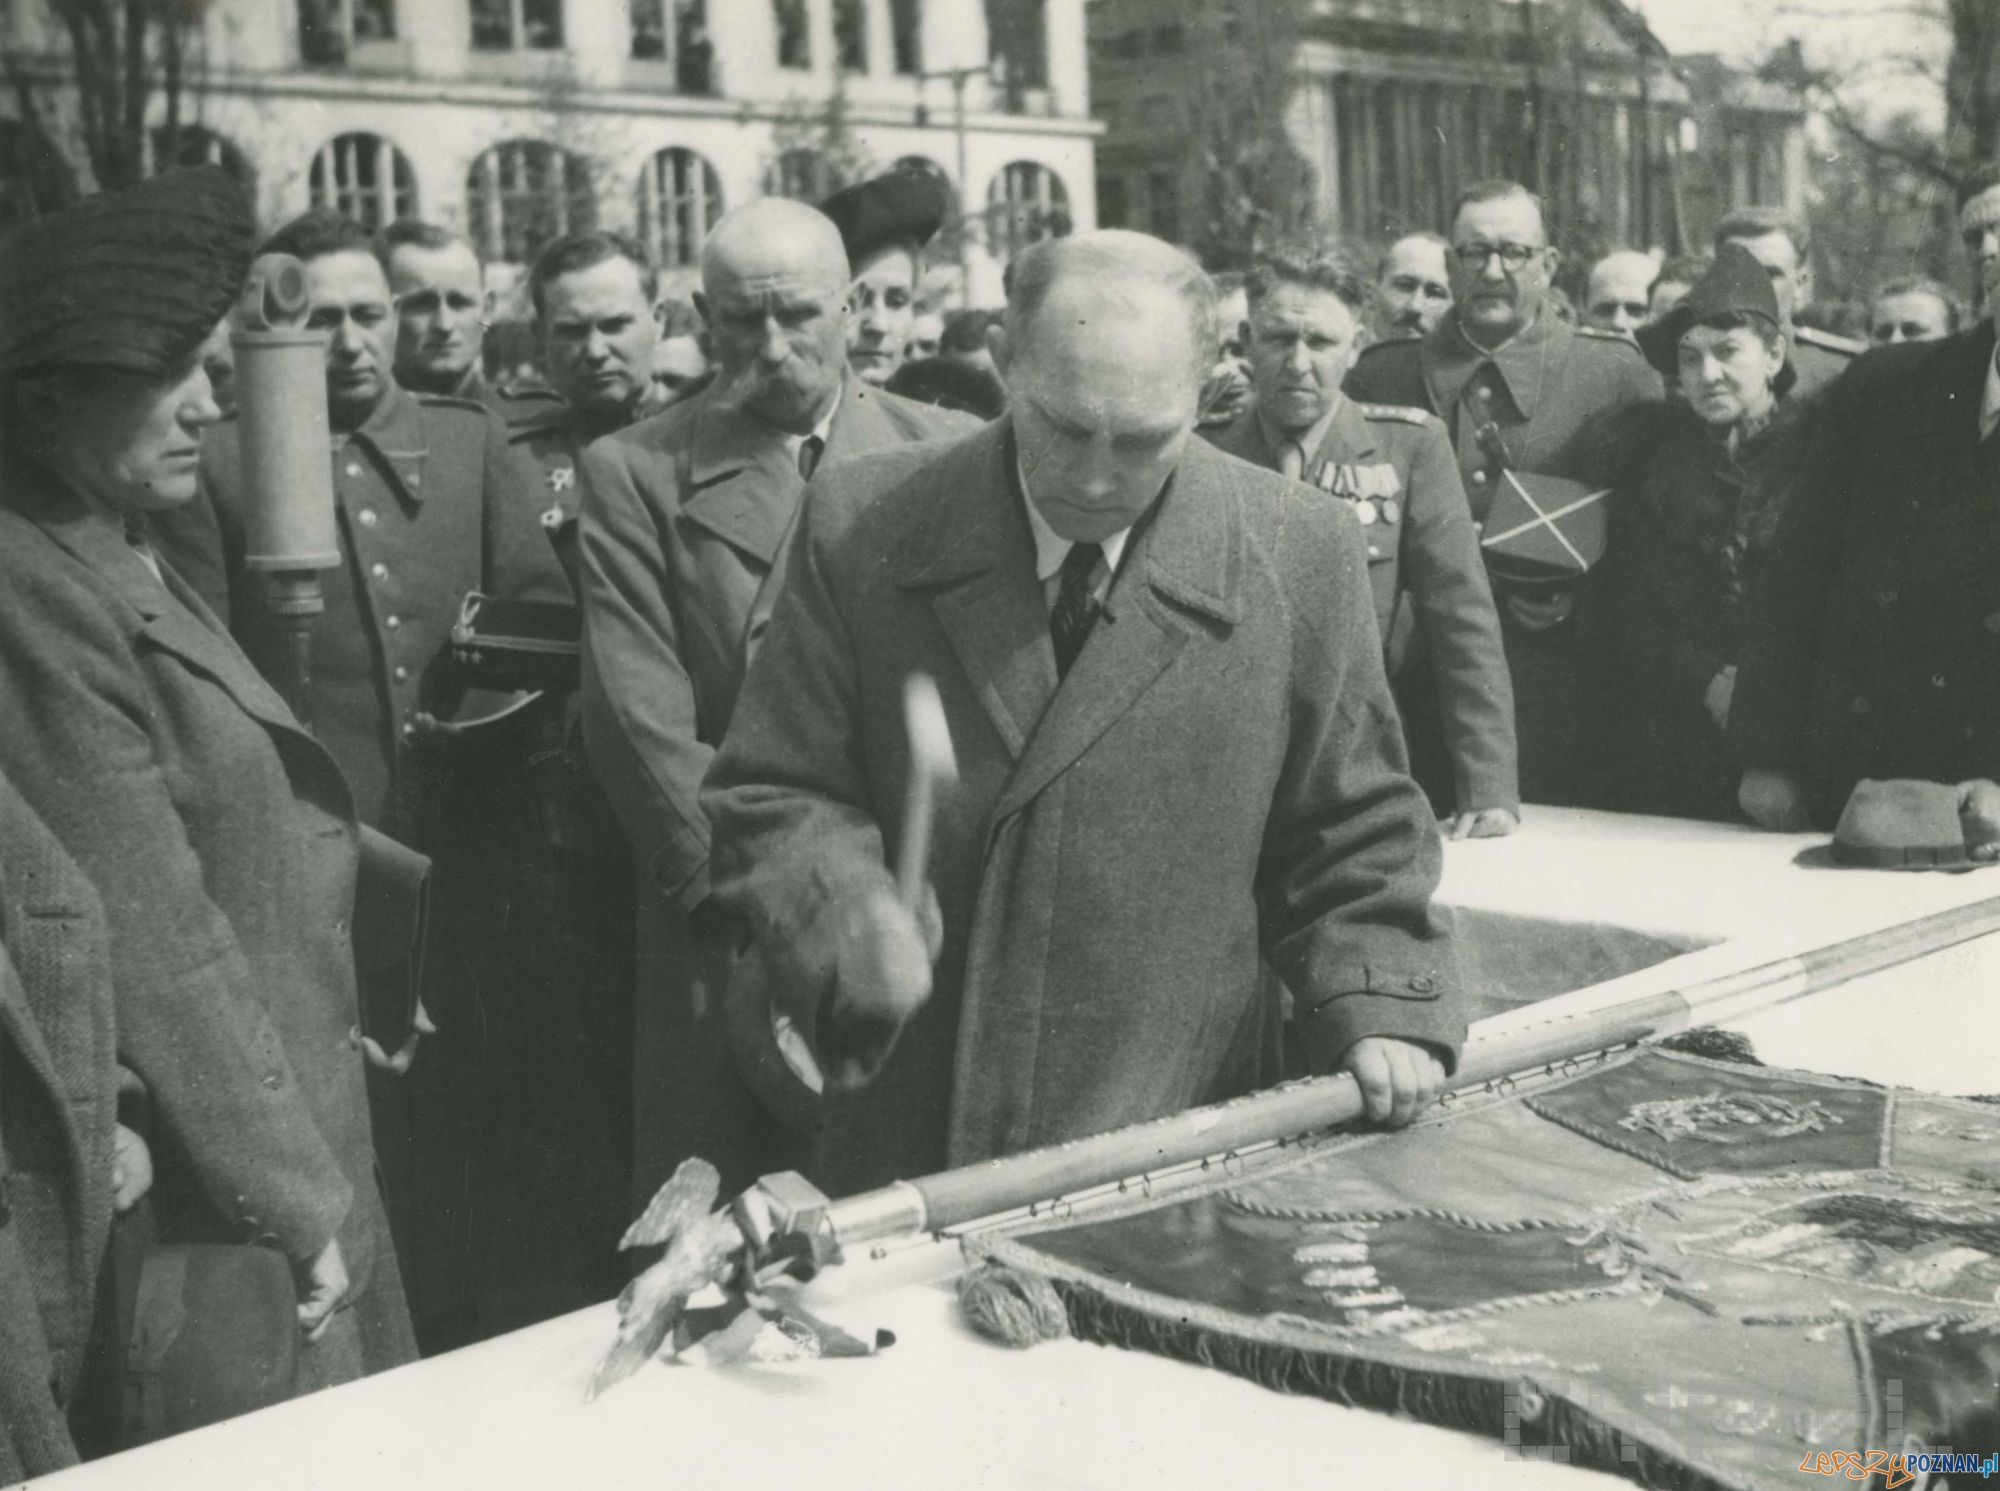 Prezydent Poznania Feliks Maciejewski wbija pamiątkowe gwoździe w drzewiec sztandaru 3. brygady pancernej II Armii Wojska Polskiego w czasie ceremonii na placu Wolności - 22.04.1945